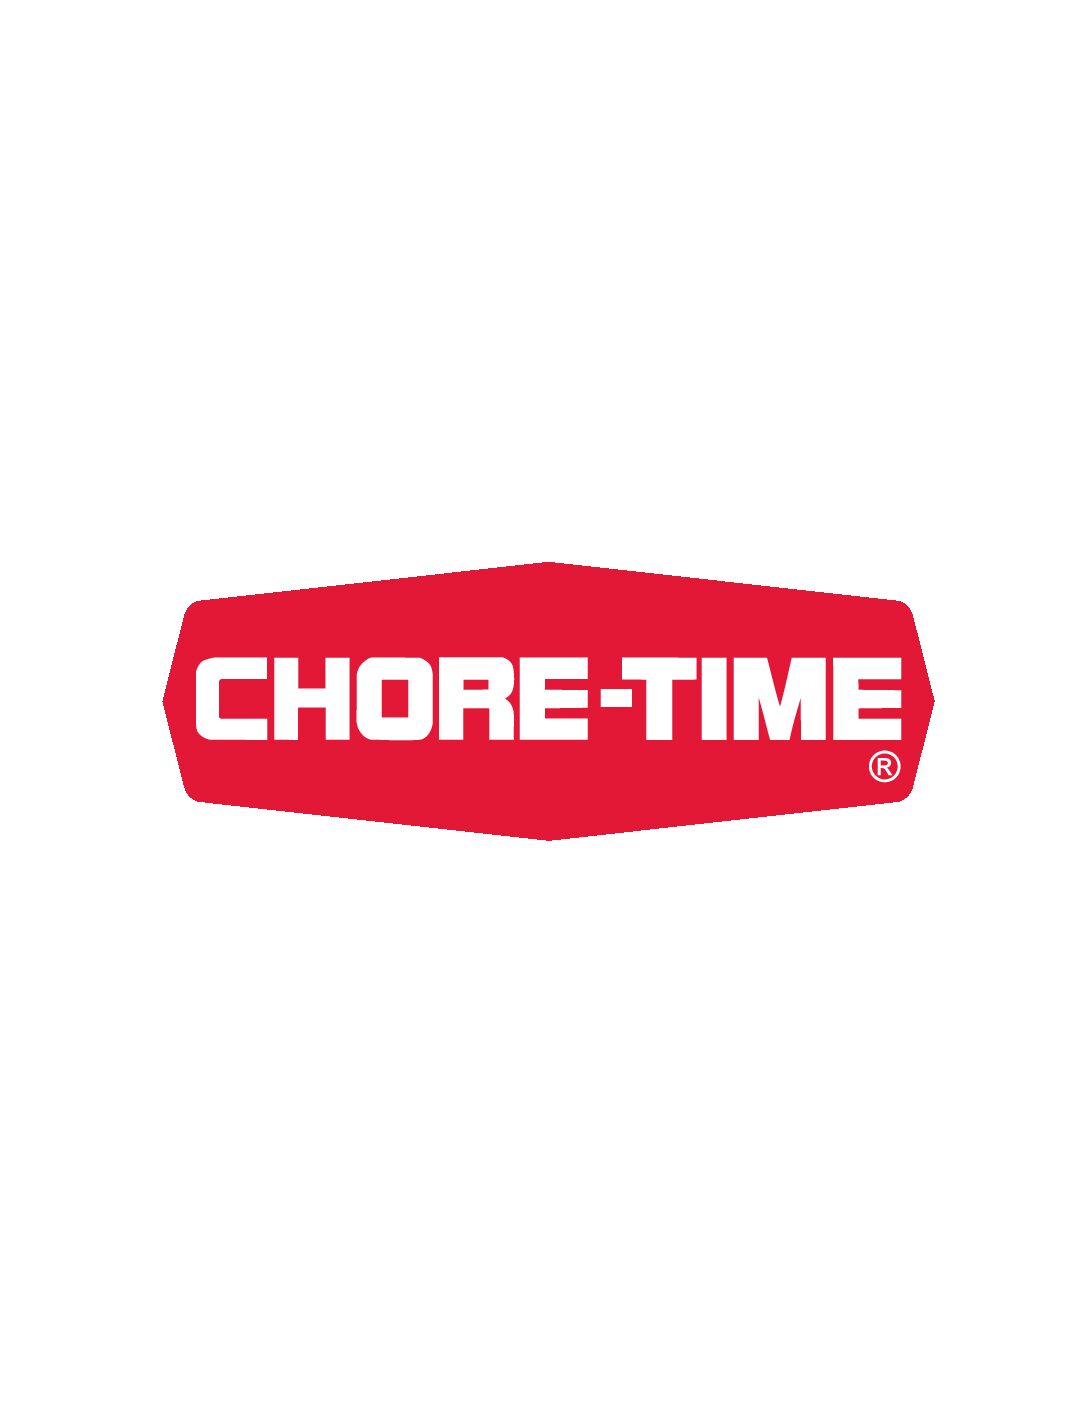 CHORE-TIME EUROPE Sp. z o.o.